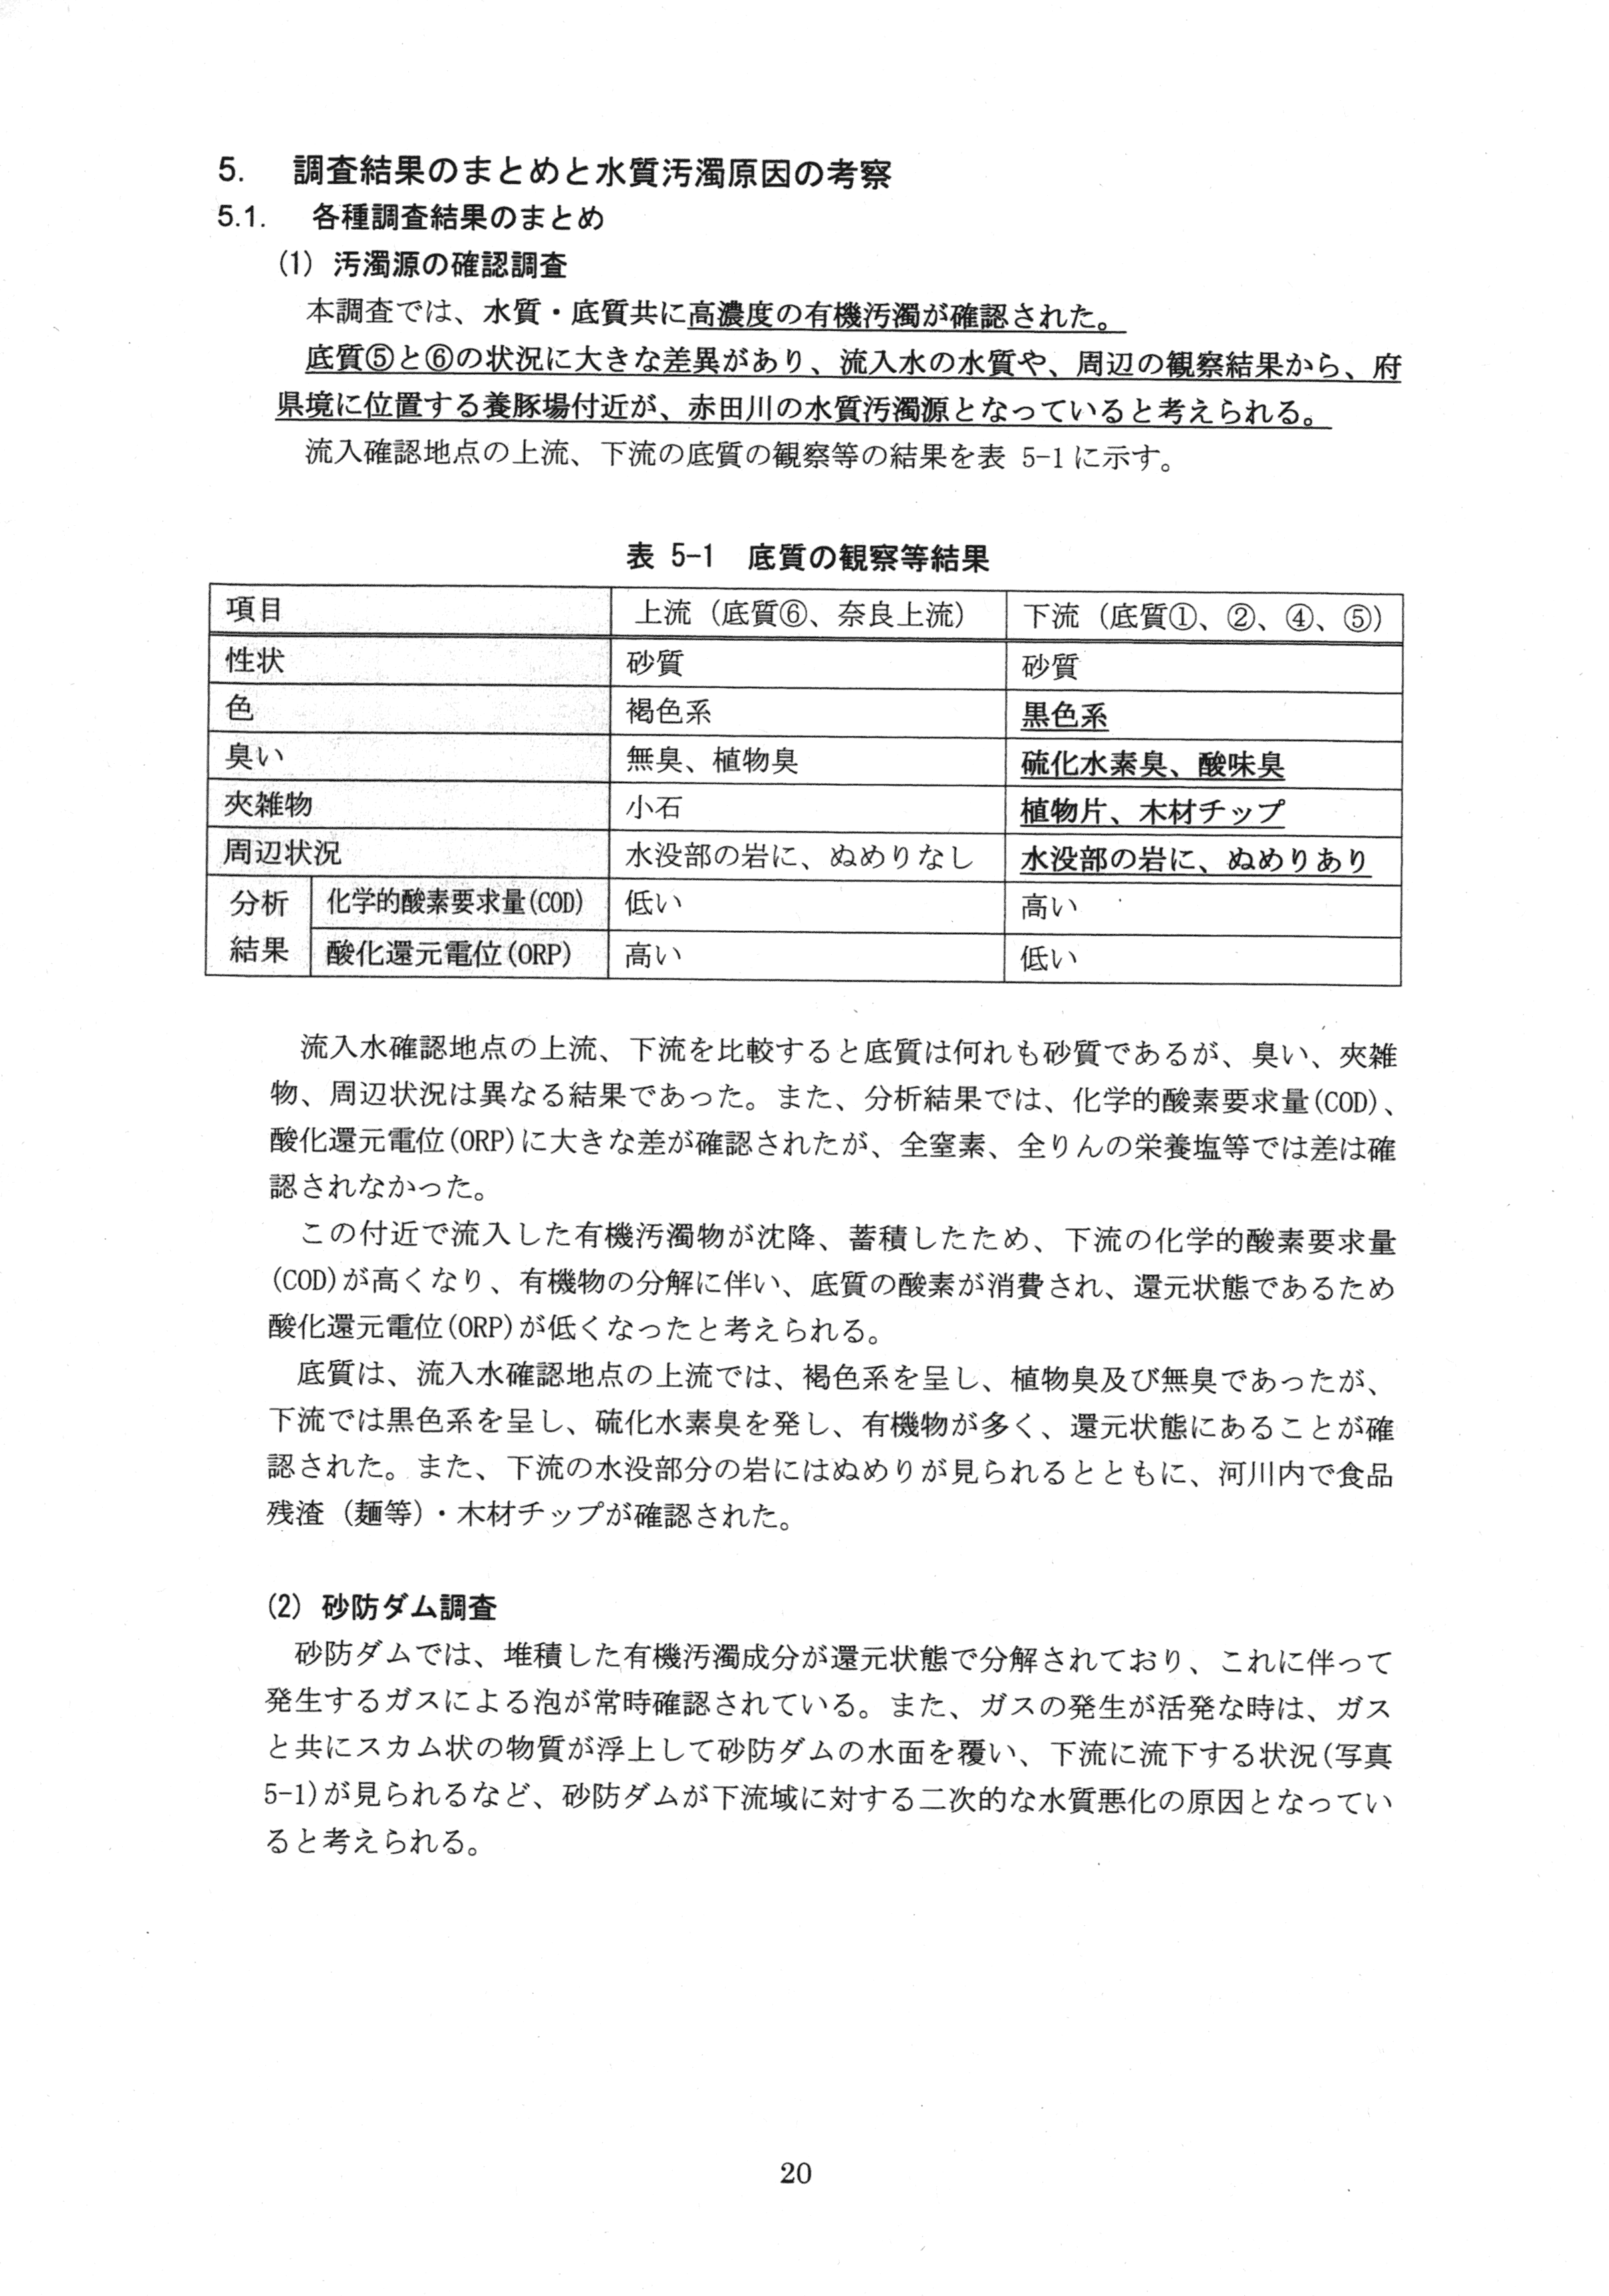 平成29年11月-赤田川水質汚濁状況調査報告書-22